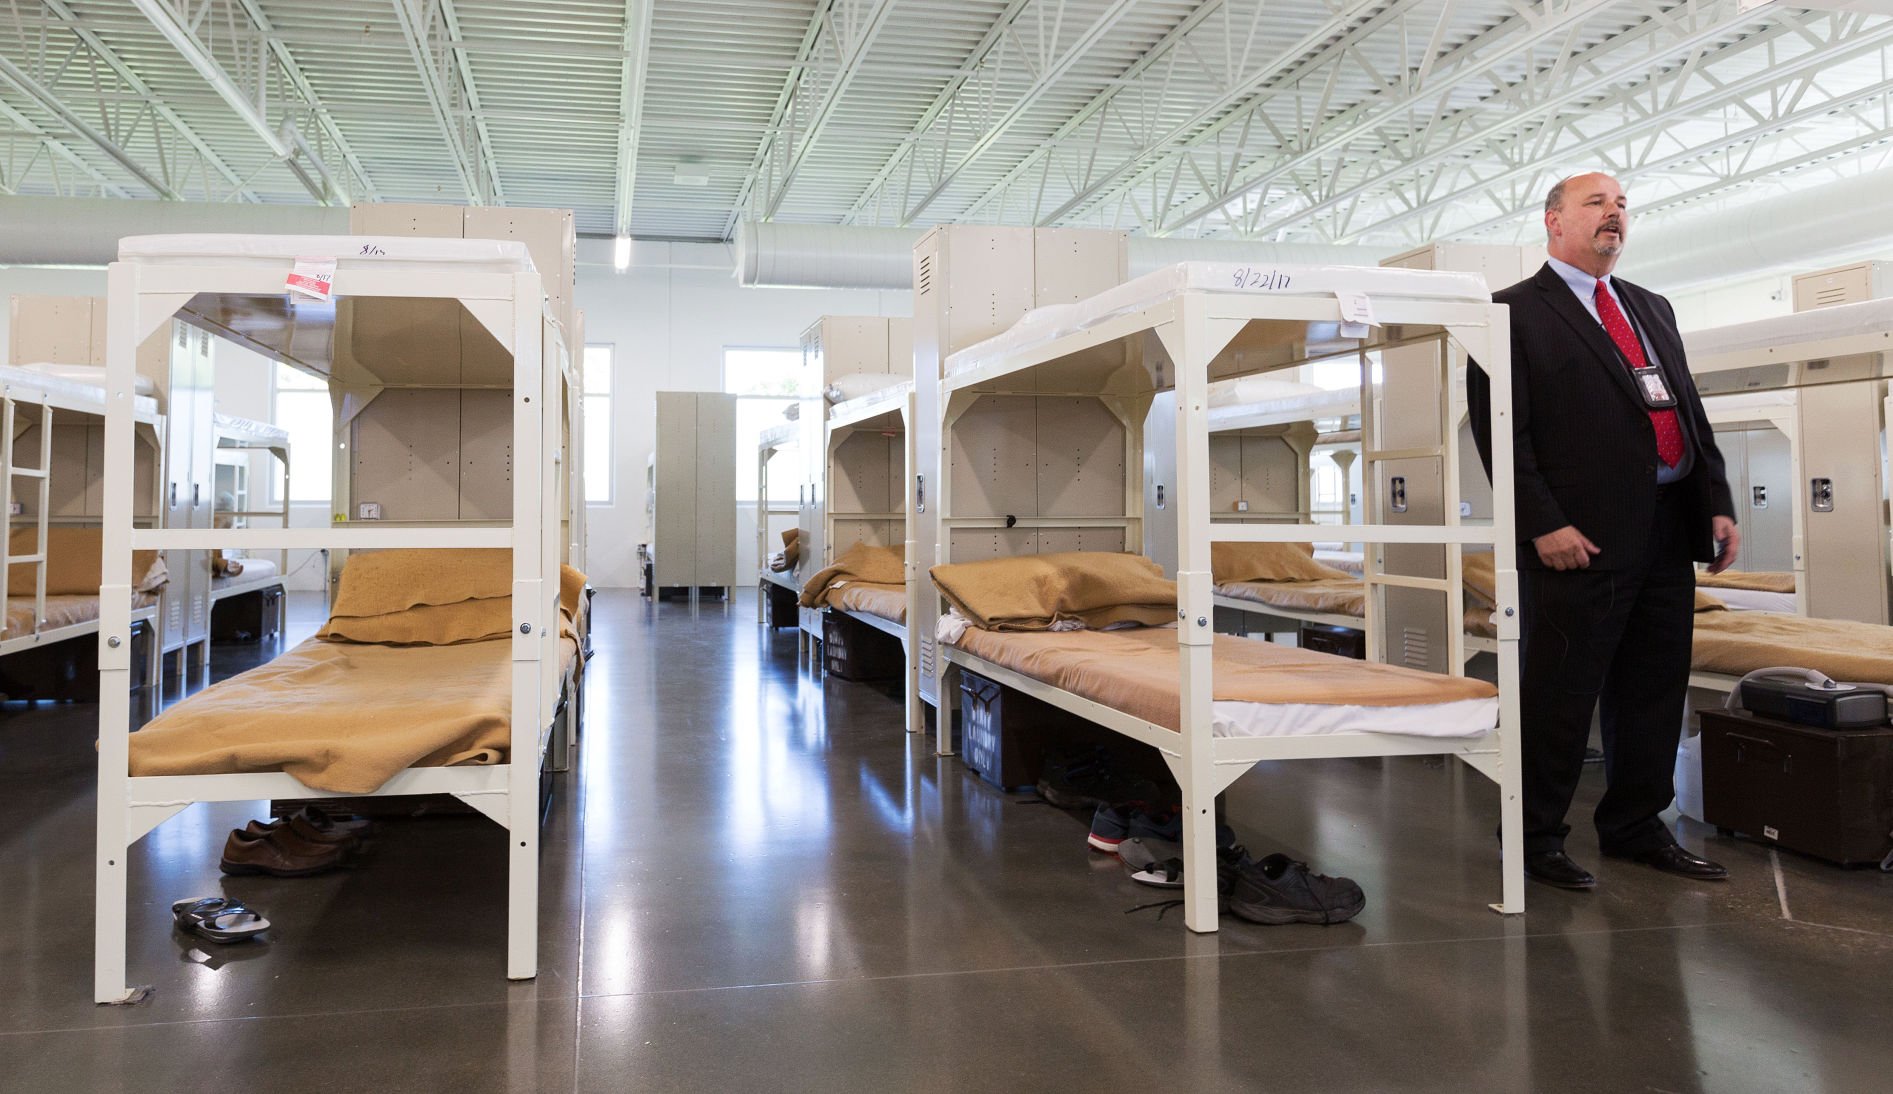 prison architect dormitory design